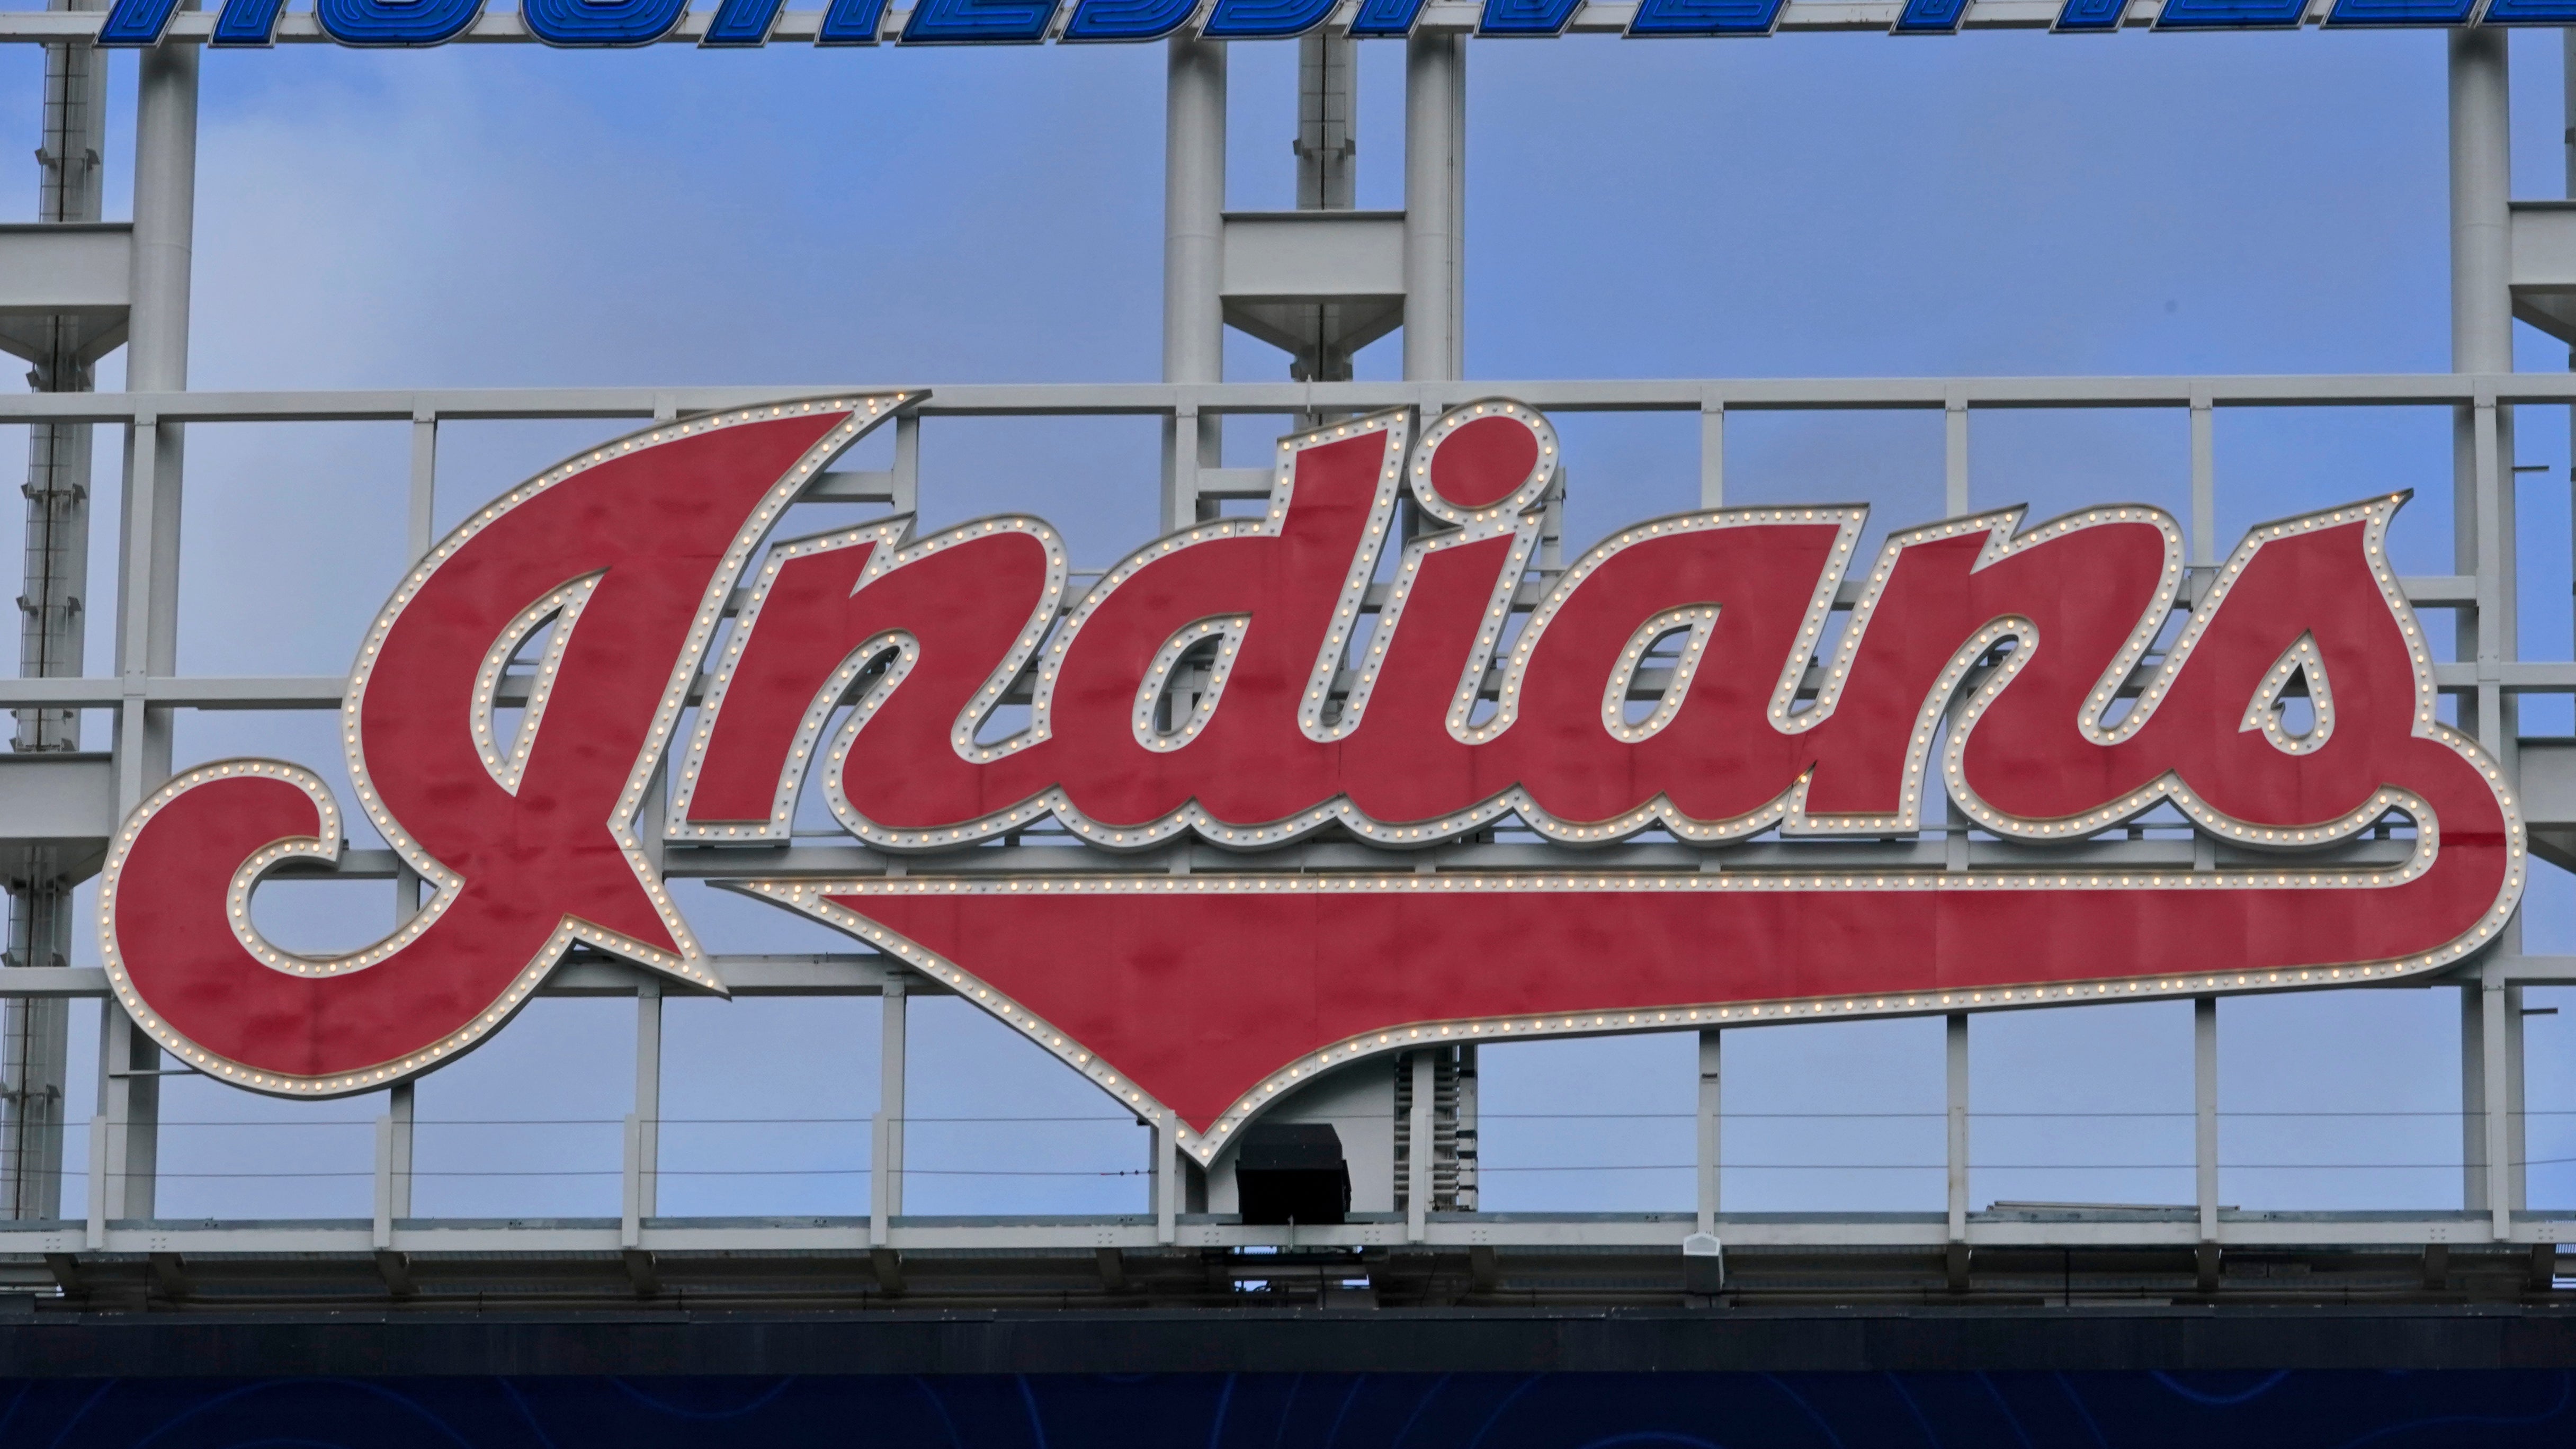 Cleveland indians baseball, Cleveland indians, Cleveland indians logo